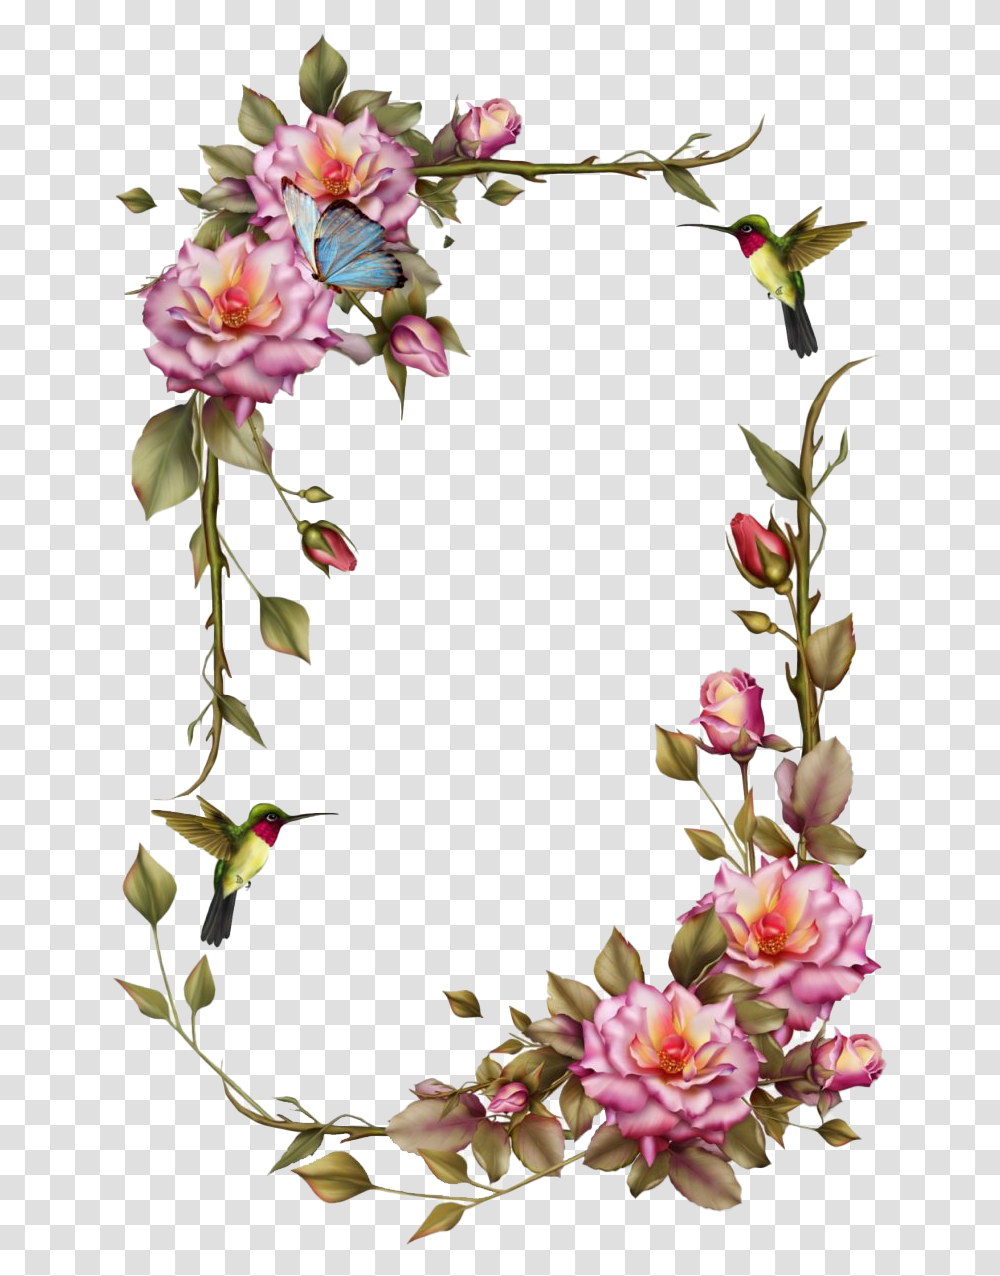 Vintage Floral Frame Clipart Flower Frames, Plant, Blossom, Bird, Animal Transparent Png